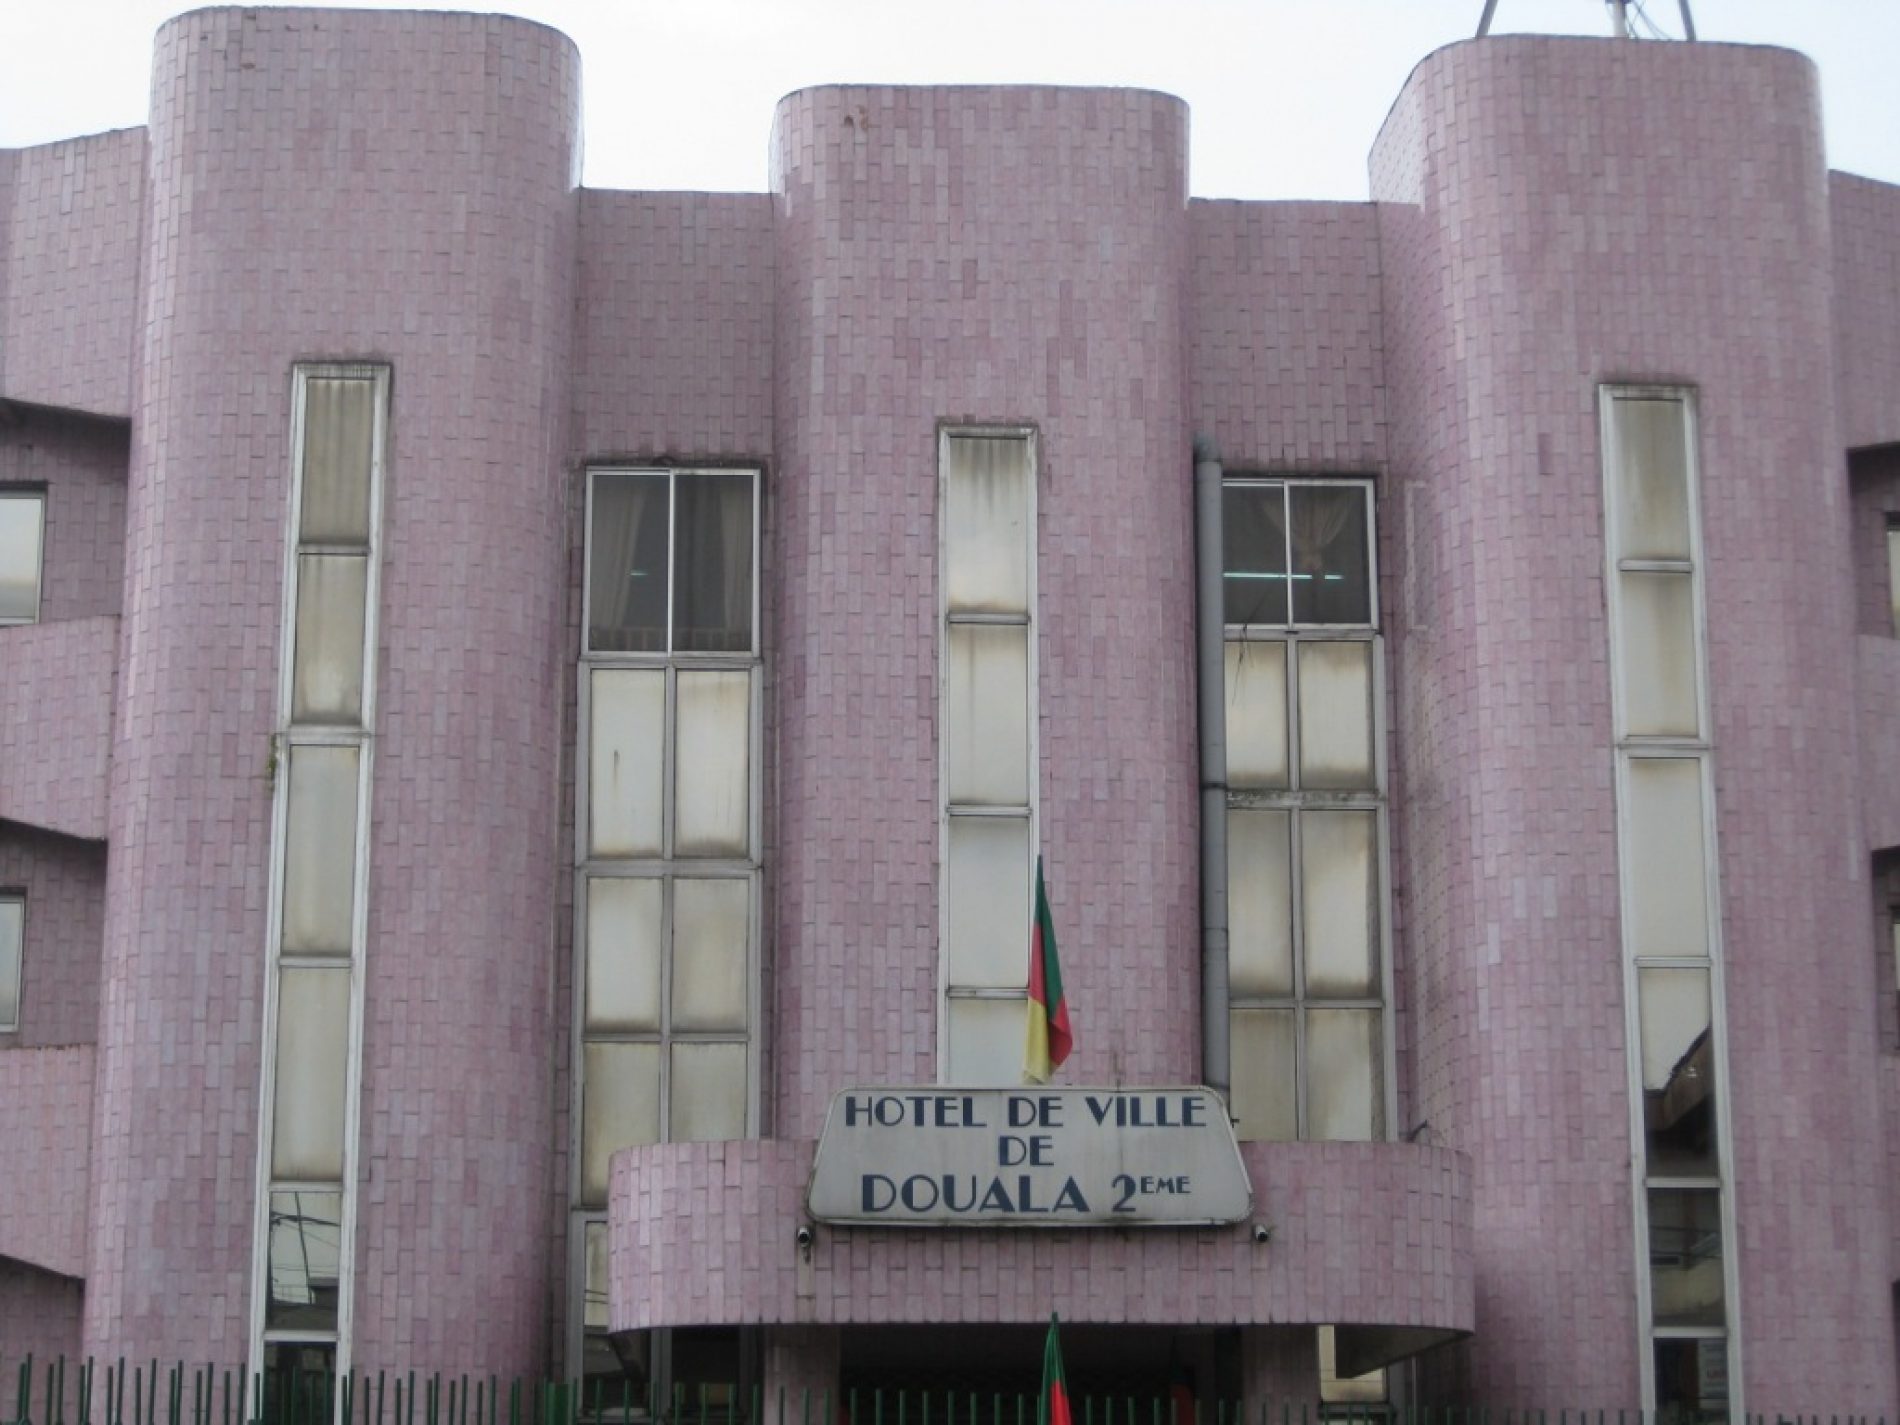 Mairies de Douala 2ème  et de Garoua 2ème : L’heure des bilans